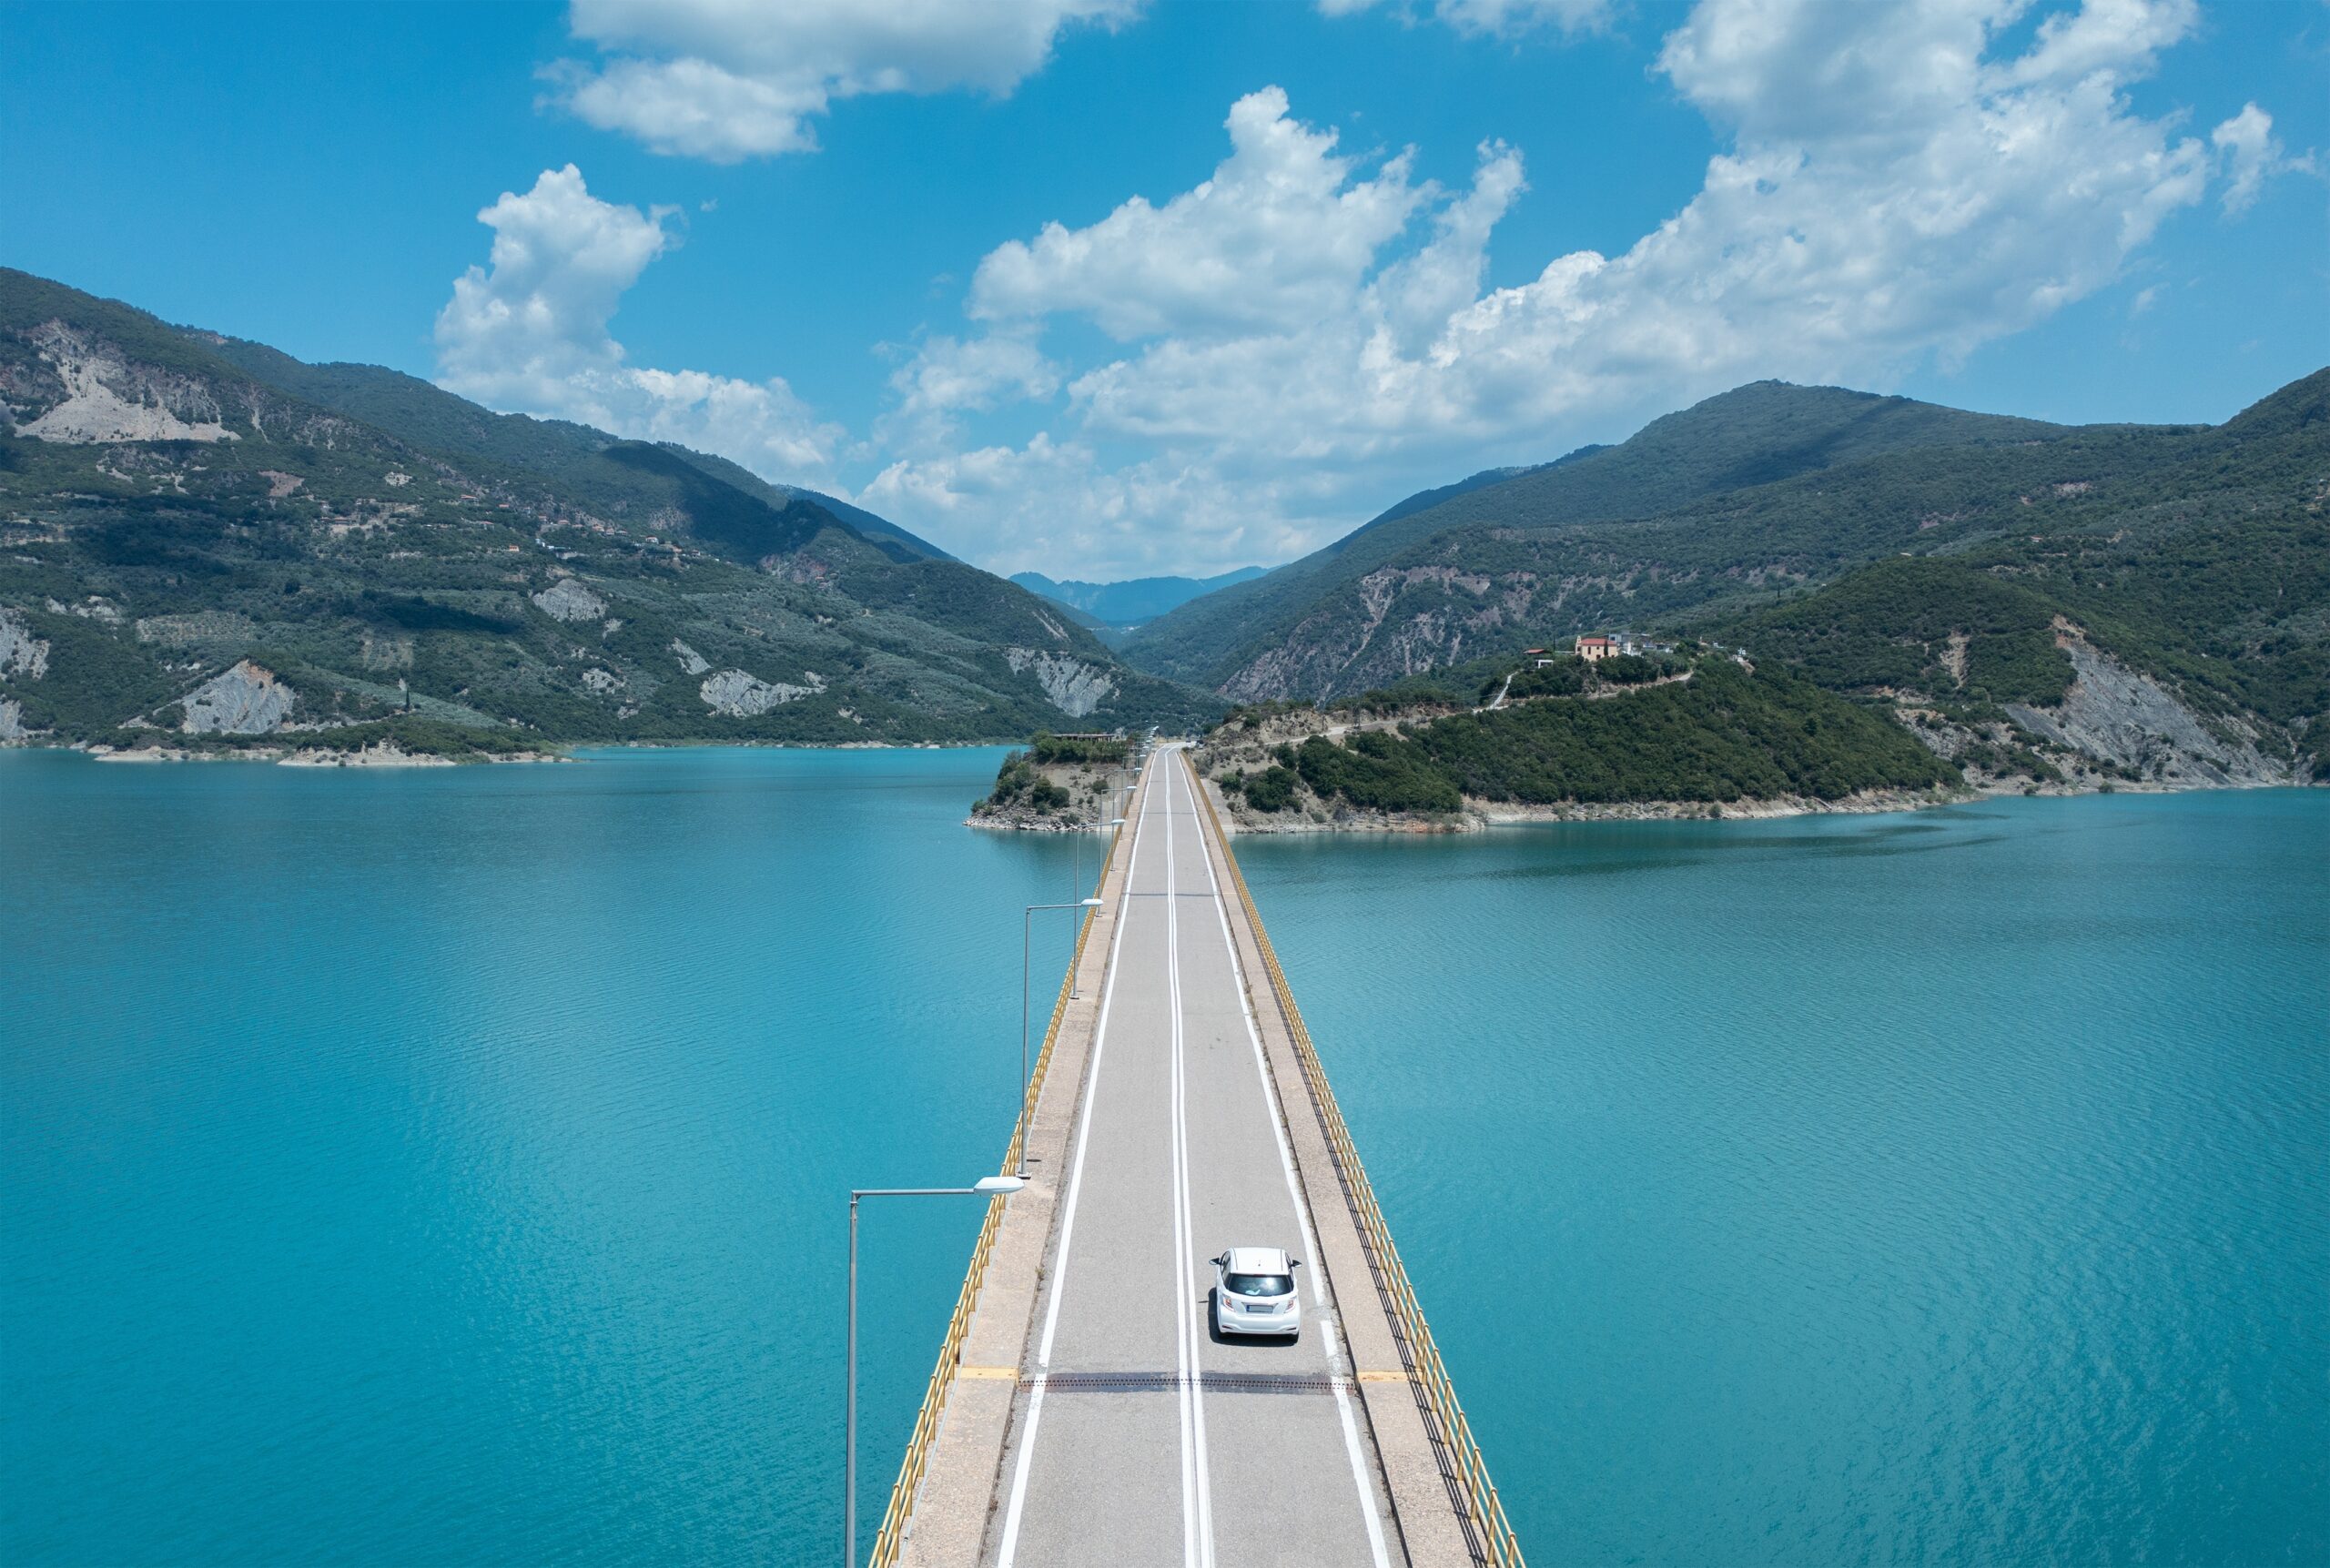 Road trip στη Λίμνη Κρεμαστών, μία από τις ομορφότερες στην Ελλάδα | travel.gr